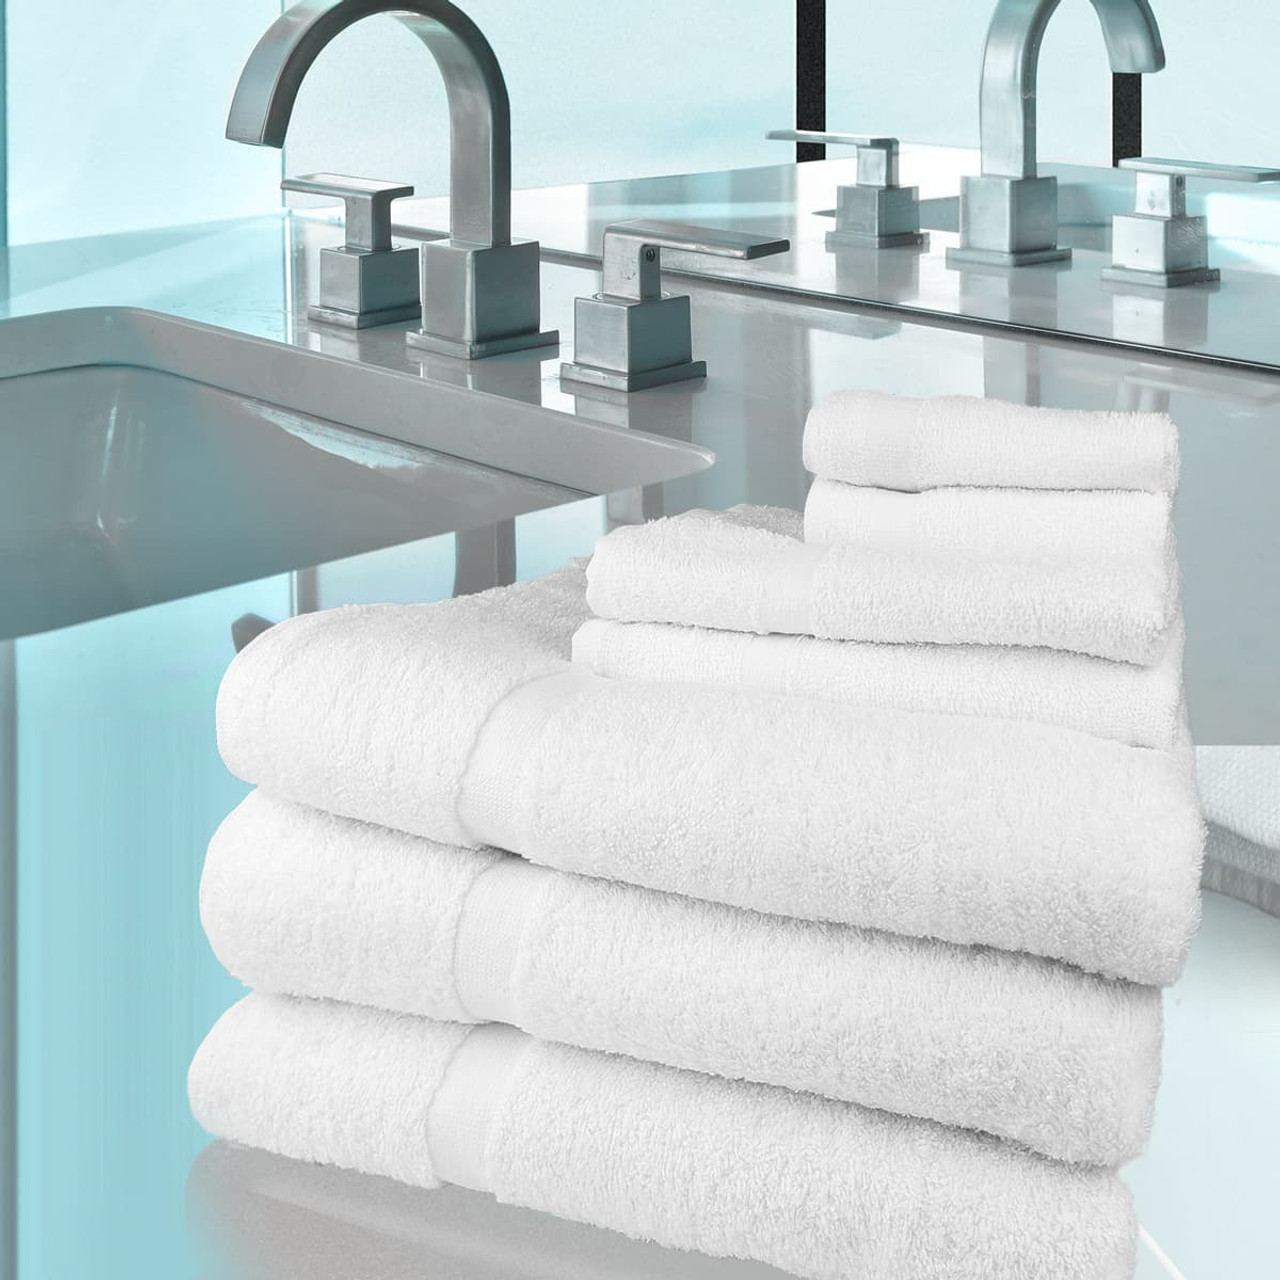 27X54-Wholesale White Bath towels 100% Cotton